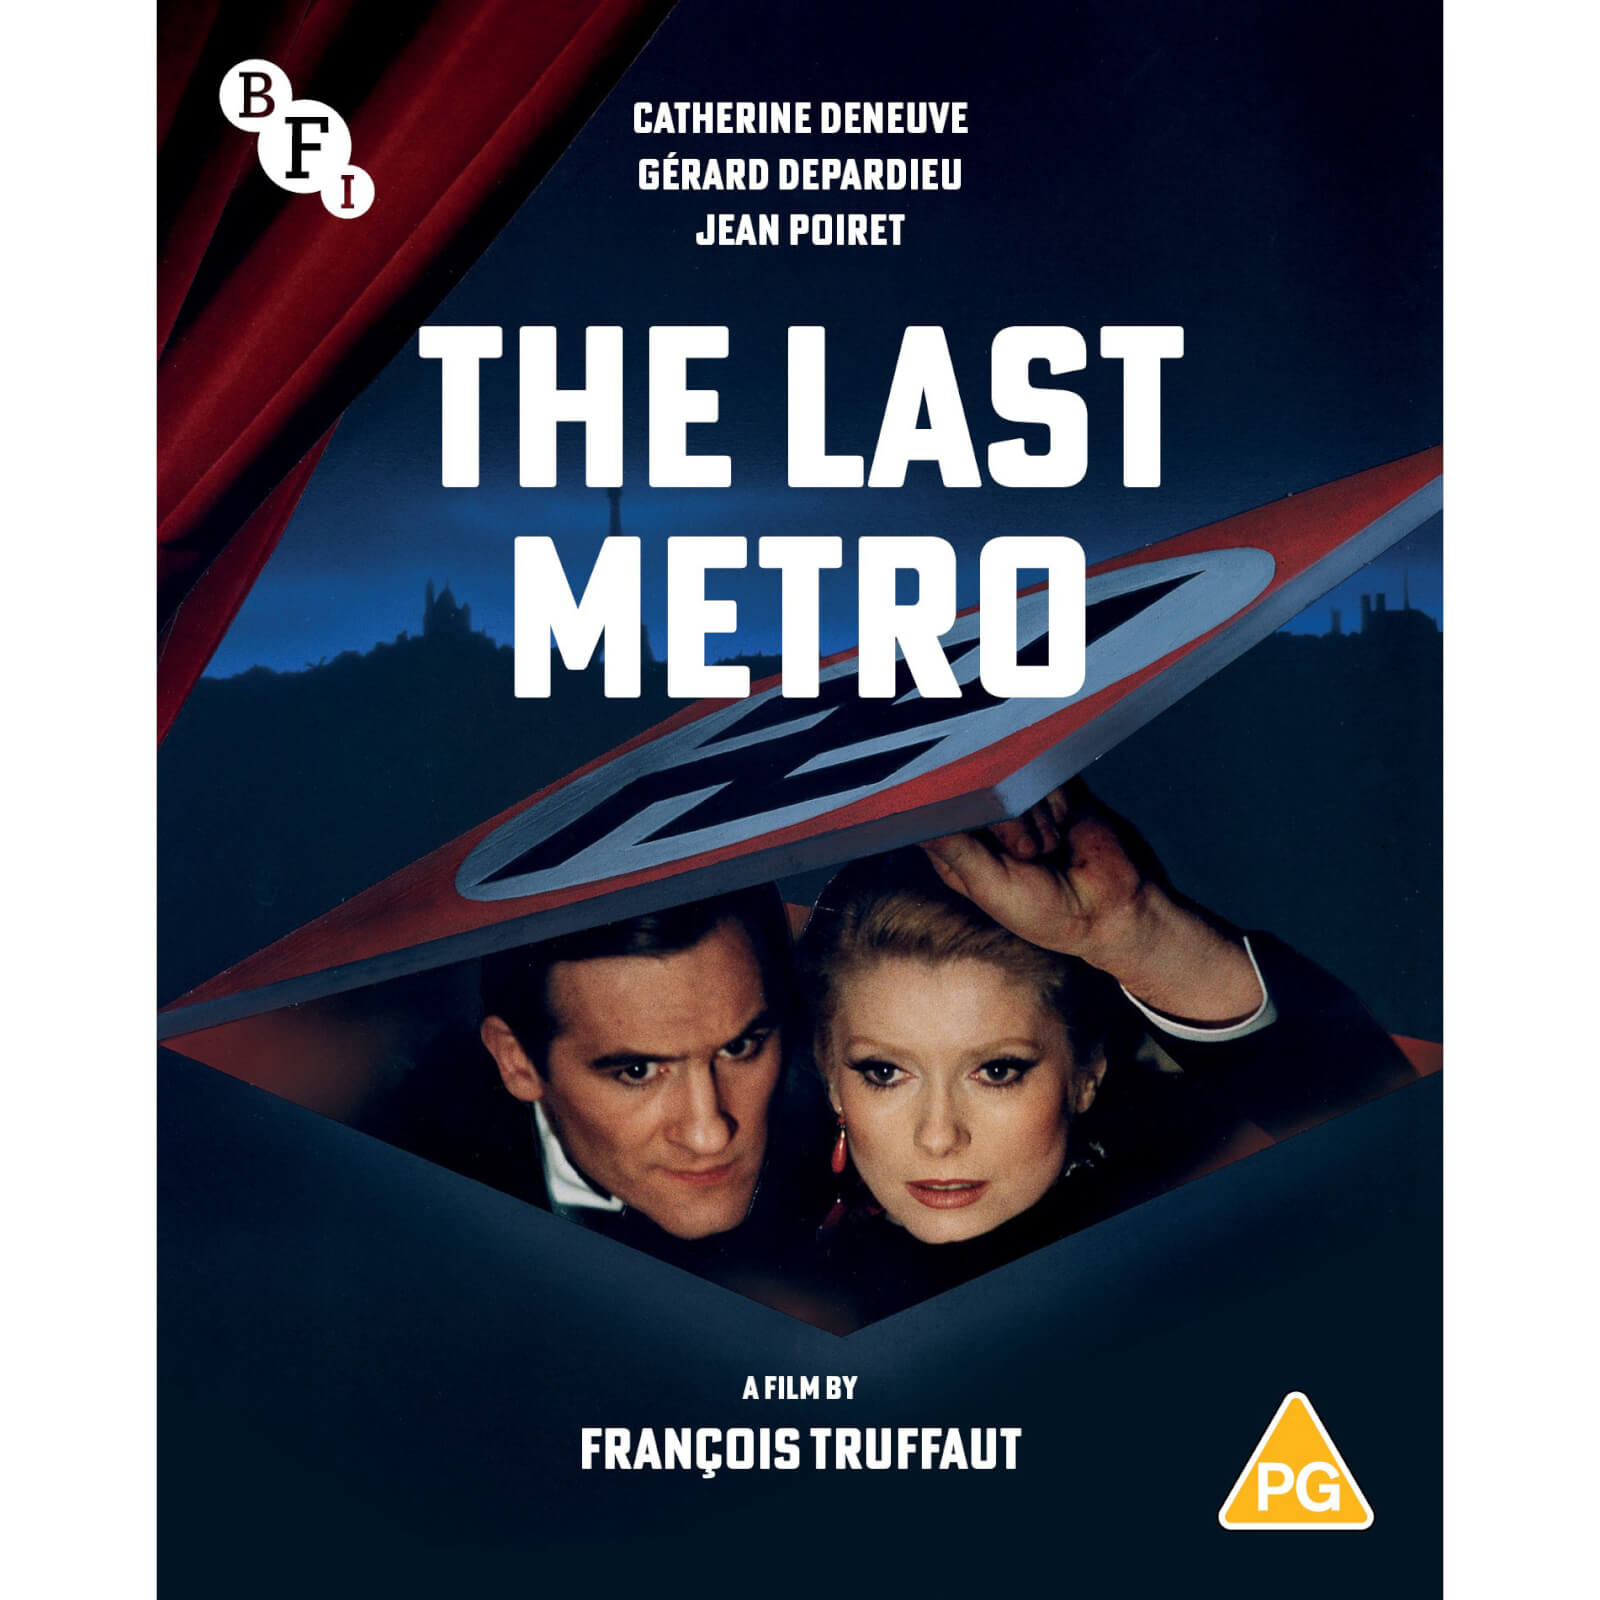 

The Last Metro